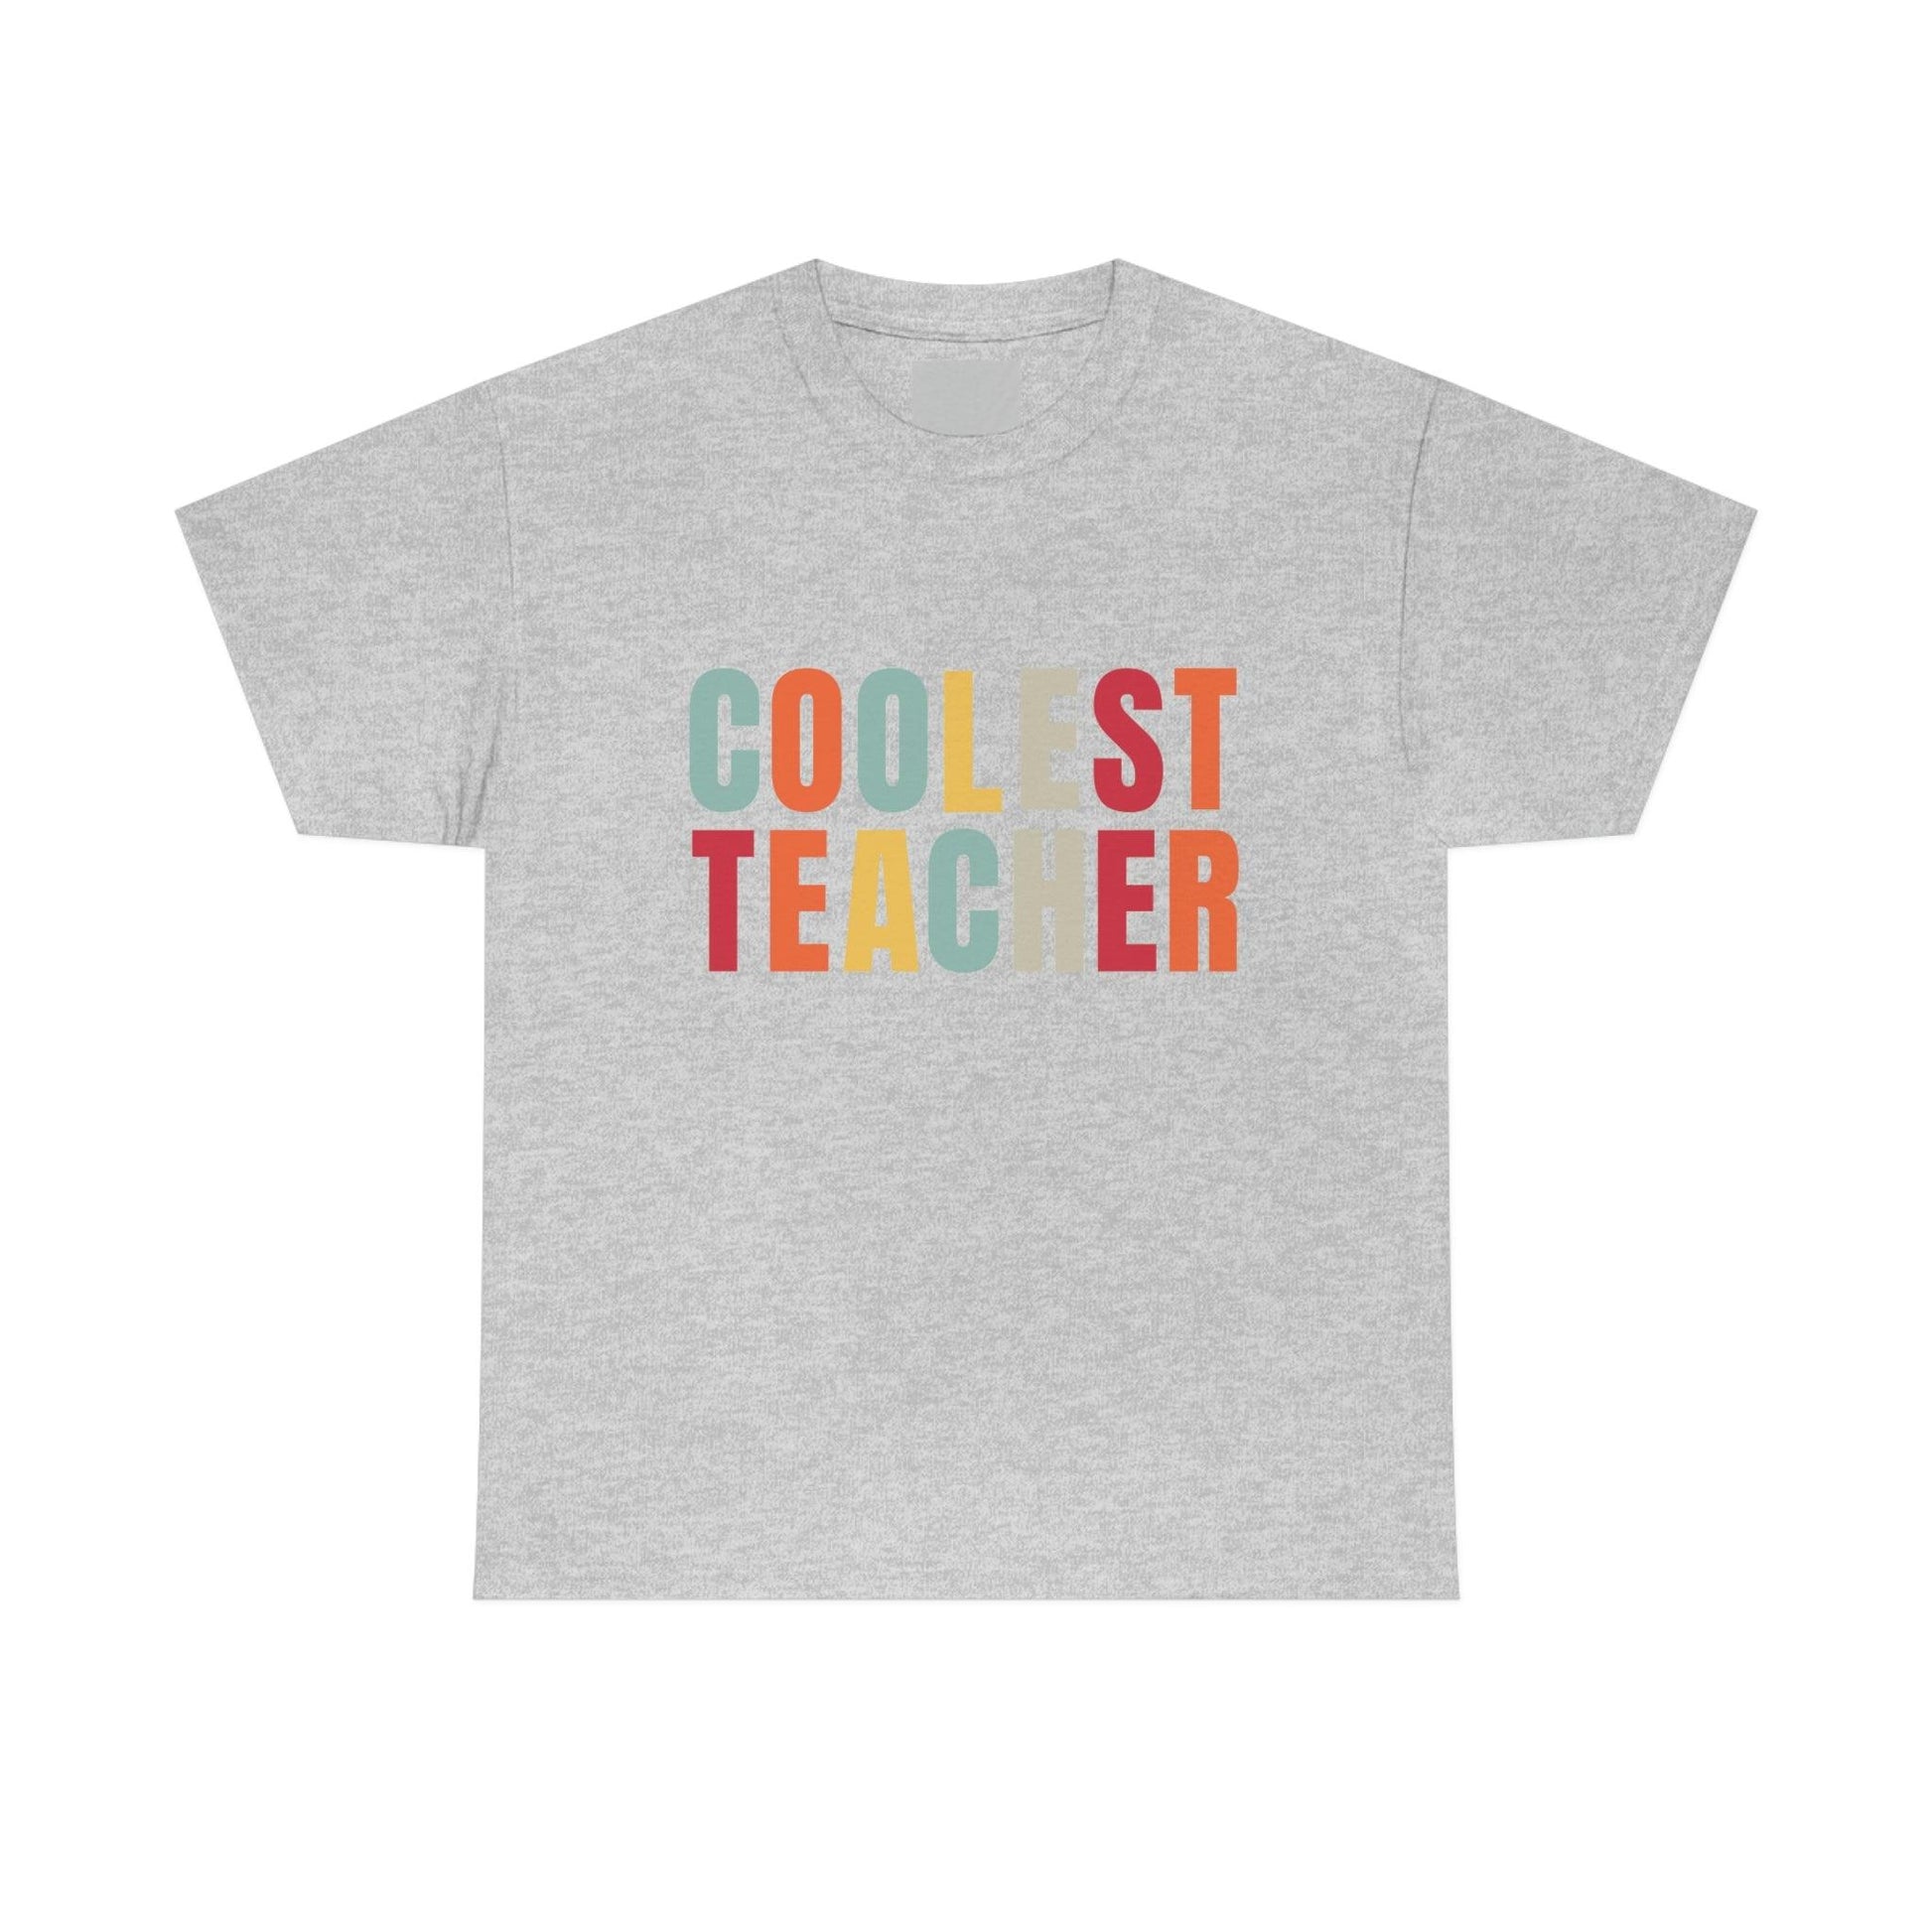 Teacher appreciation gift - Coolest Teacher Shirt - Teacher shirt - Giftsmojo